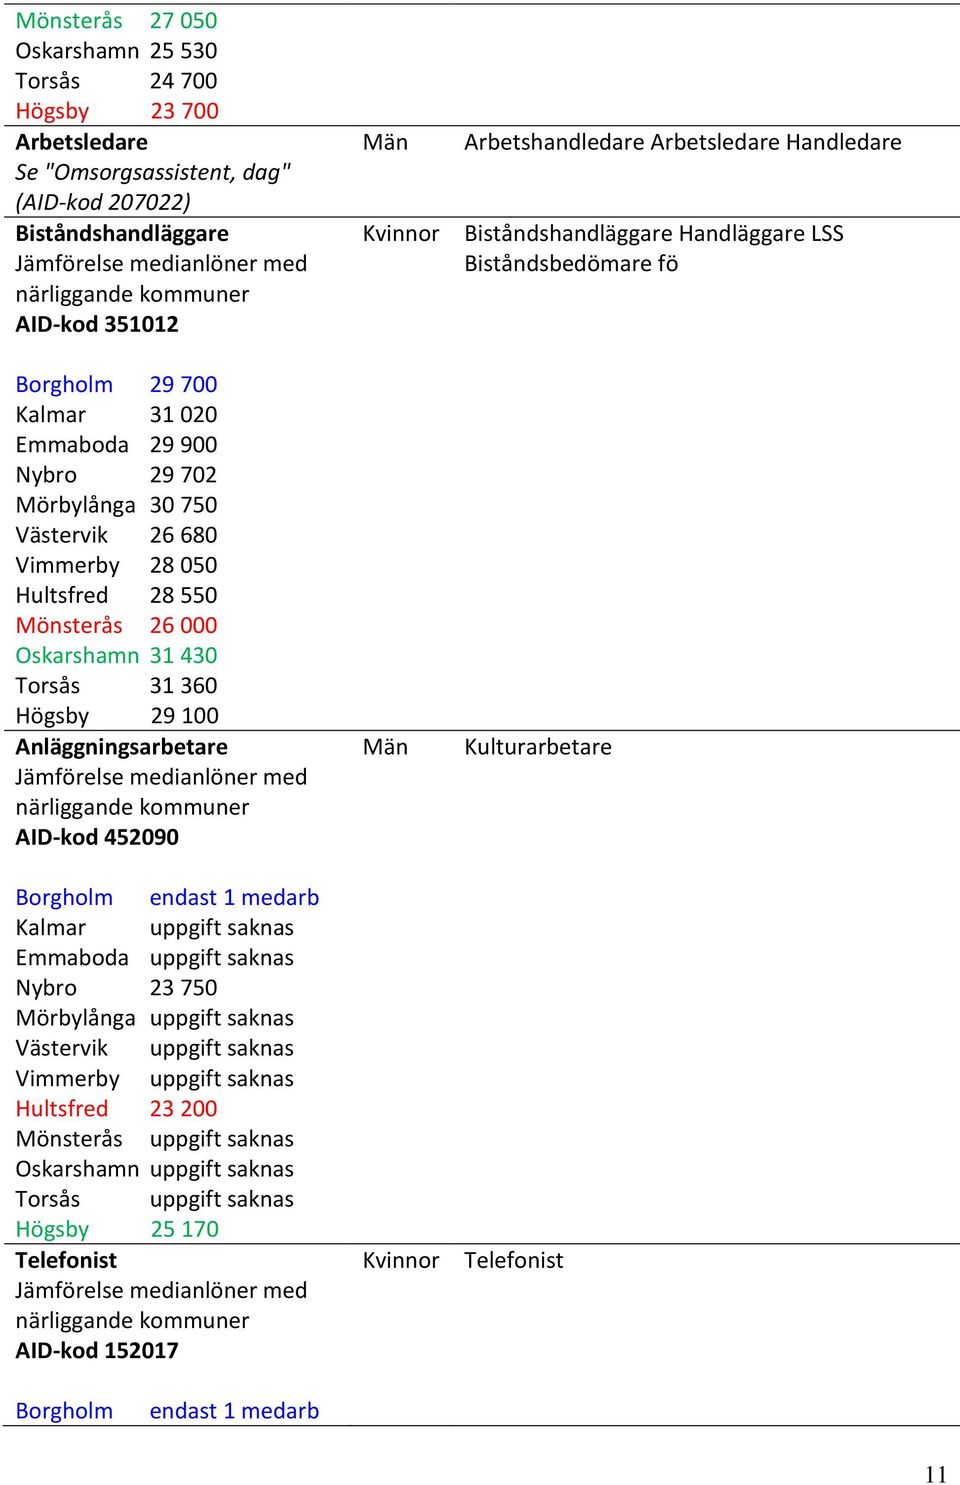 Anläggningsarbetare Jämförelse medianlöner med närliggande kommuner AID-kod 452090 Borgholm endast 1 medarb Kalmar uppgift saknas Emmaboda uppgift saknas Nybro 23 750 Mörbylånga uppgift saknas